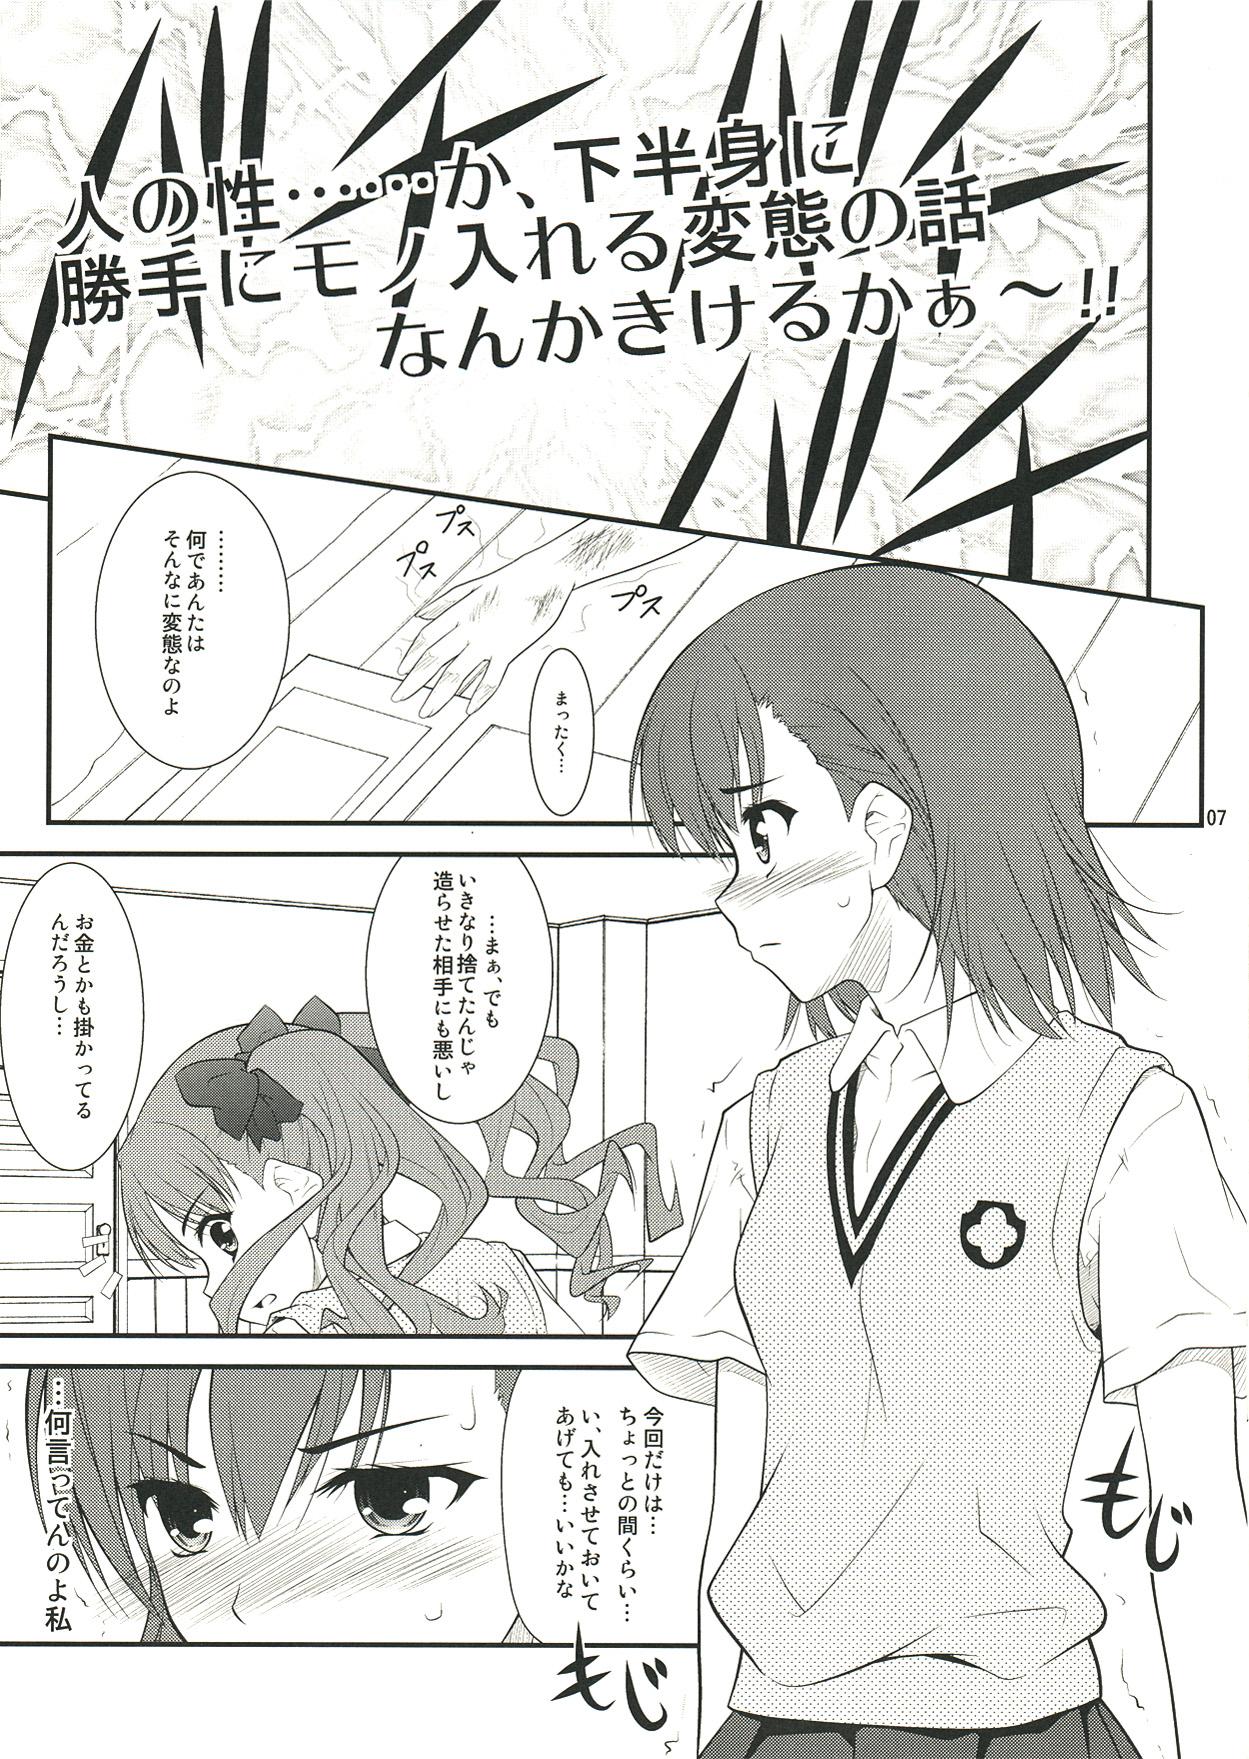 Blow Job Onee sama…Ku, Kuroko wa Kuroko wa Mou ! - Toaru kagaku no railgun Virtual - Page 7